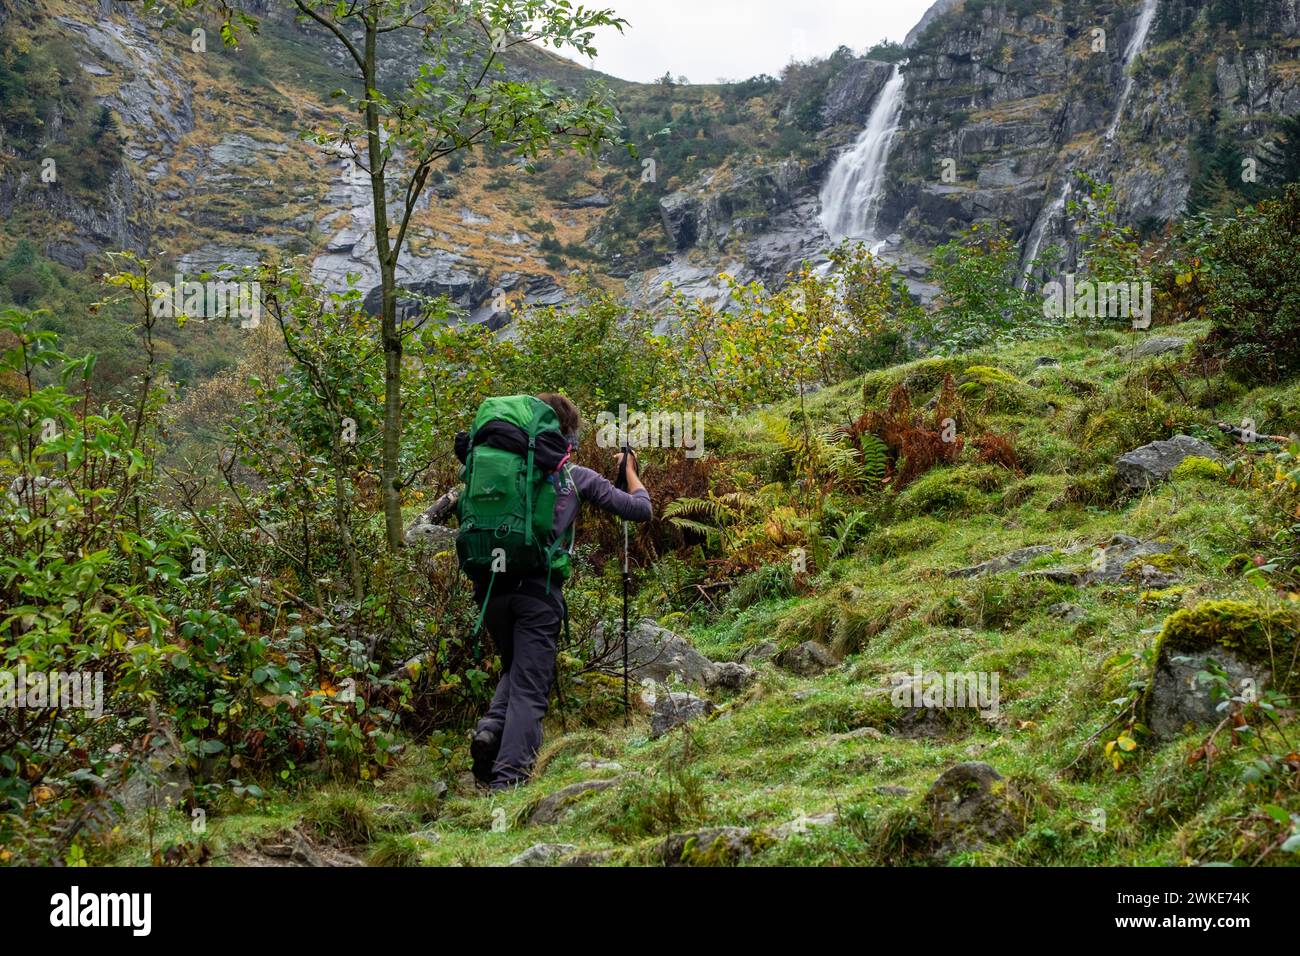 cascada de Nérech, valle de Valier -Riberot-, Parque Natural Regional de los Pirineos de Ariège, cordillera de los Pirineos, Francia. Stock Photo